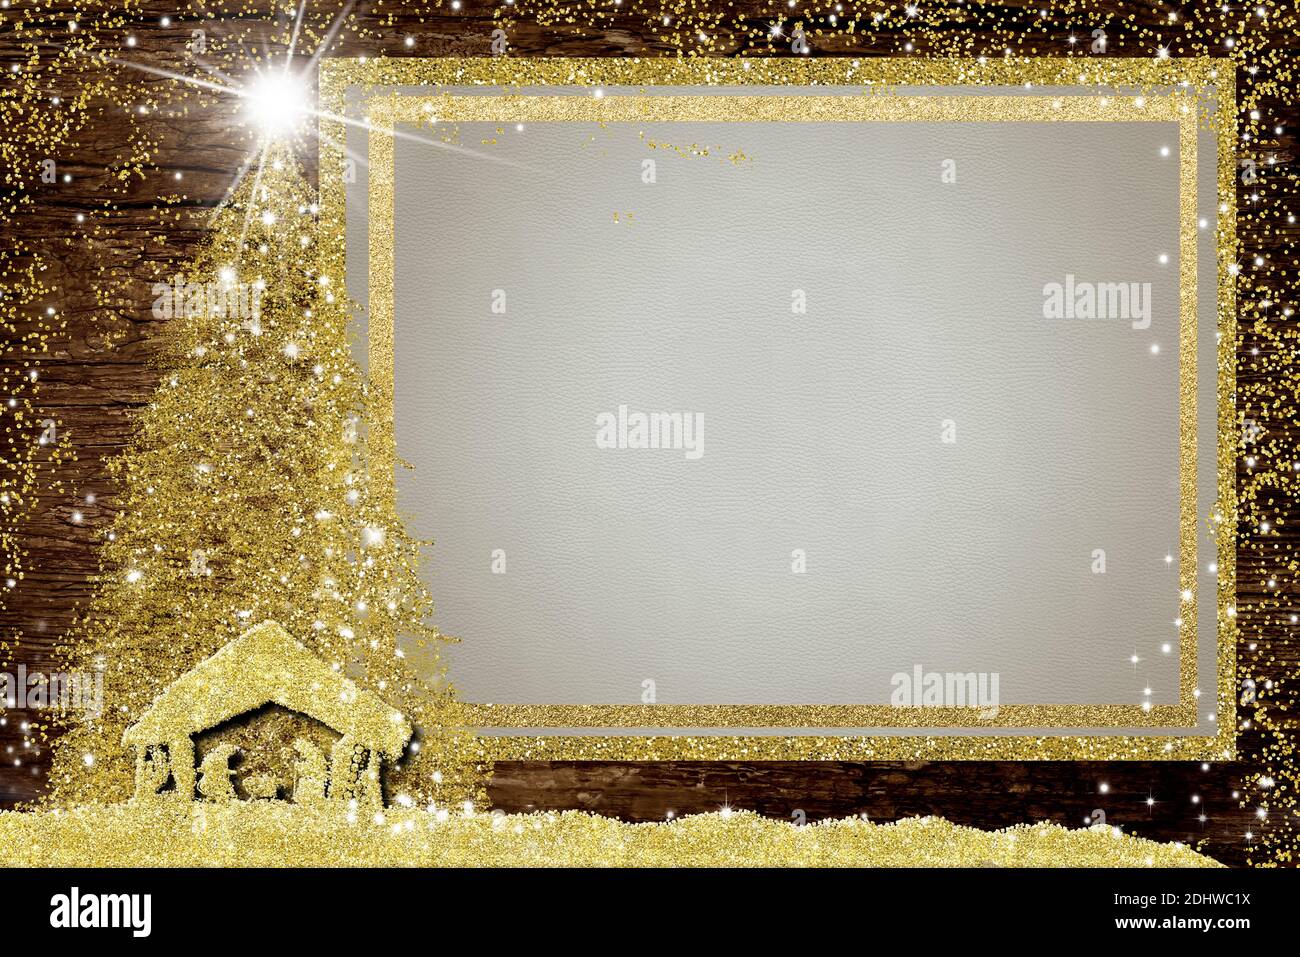 Noël cadre photo vide cartes de voeux. Scène Nativiy, Noël et étoile de Bethléem, paillettes dorées, cadre photo blanc vide sur une ancienne banette en bois Banque D'Images